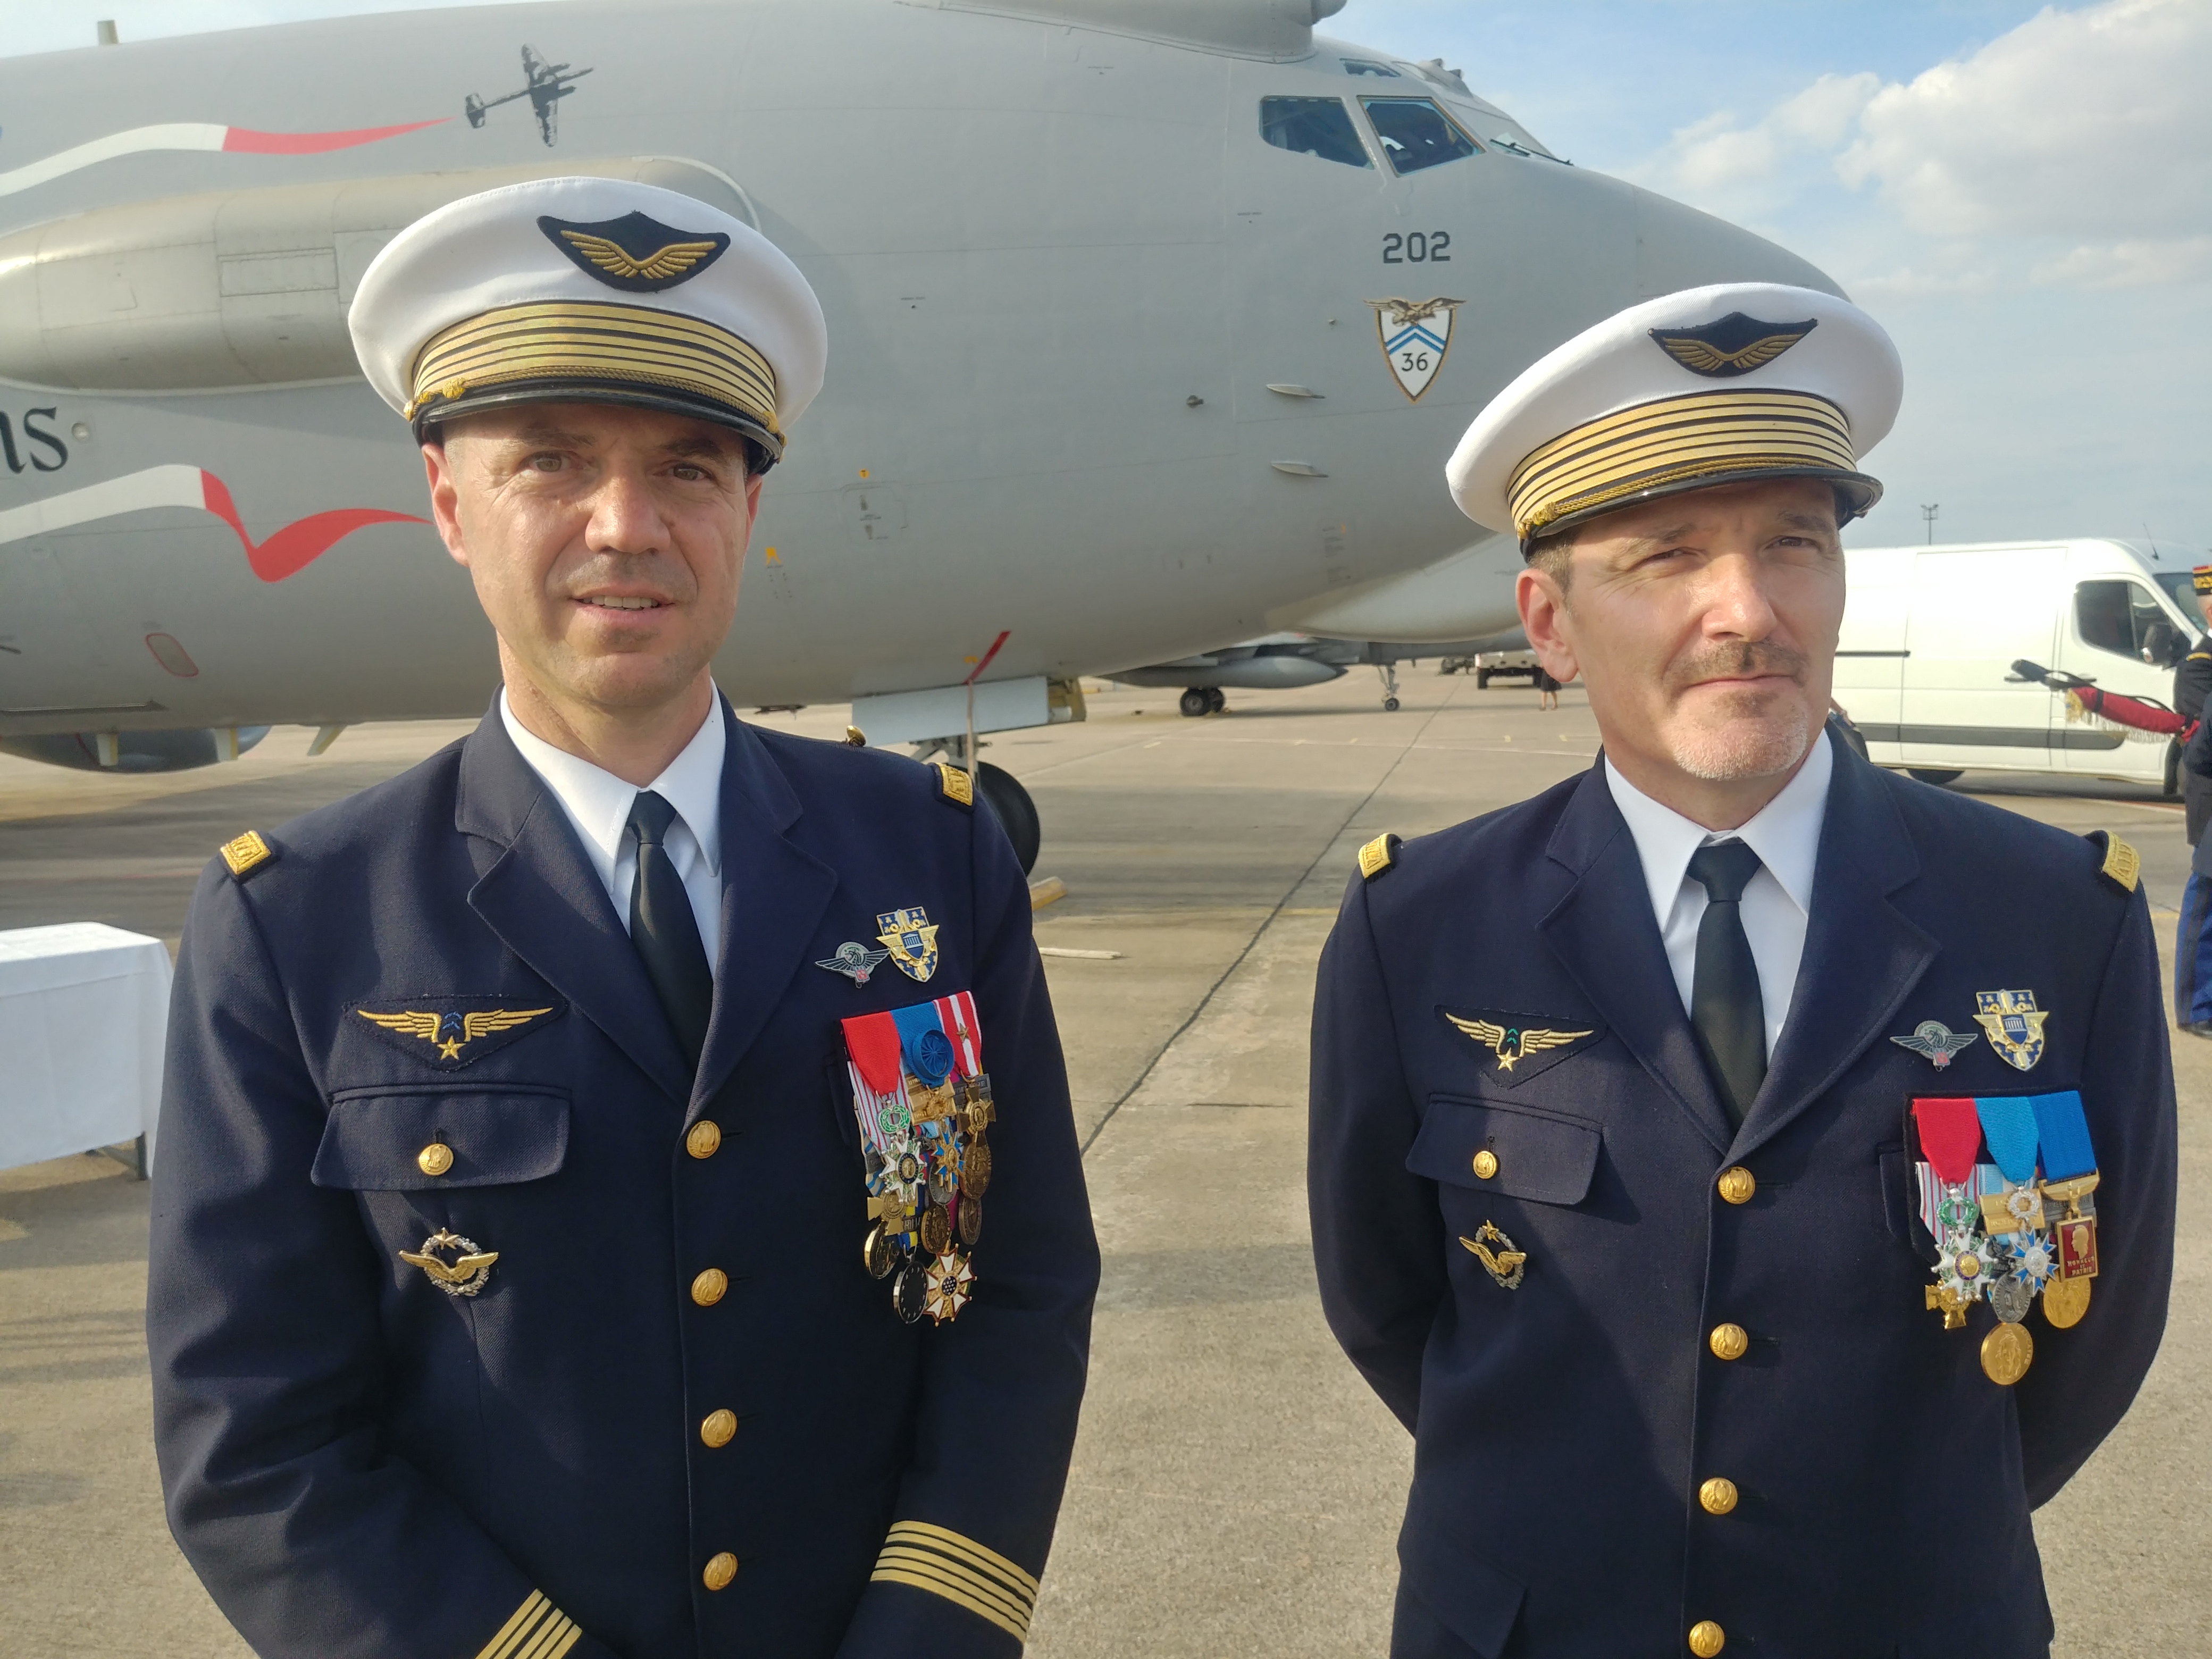 À gauche le colonel Kaladjian, à droite le colonel Gros © RCF - Guillaume Martin-Deguéret.